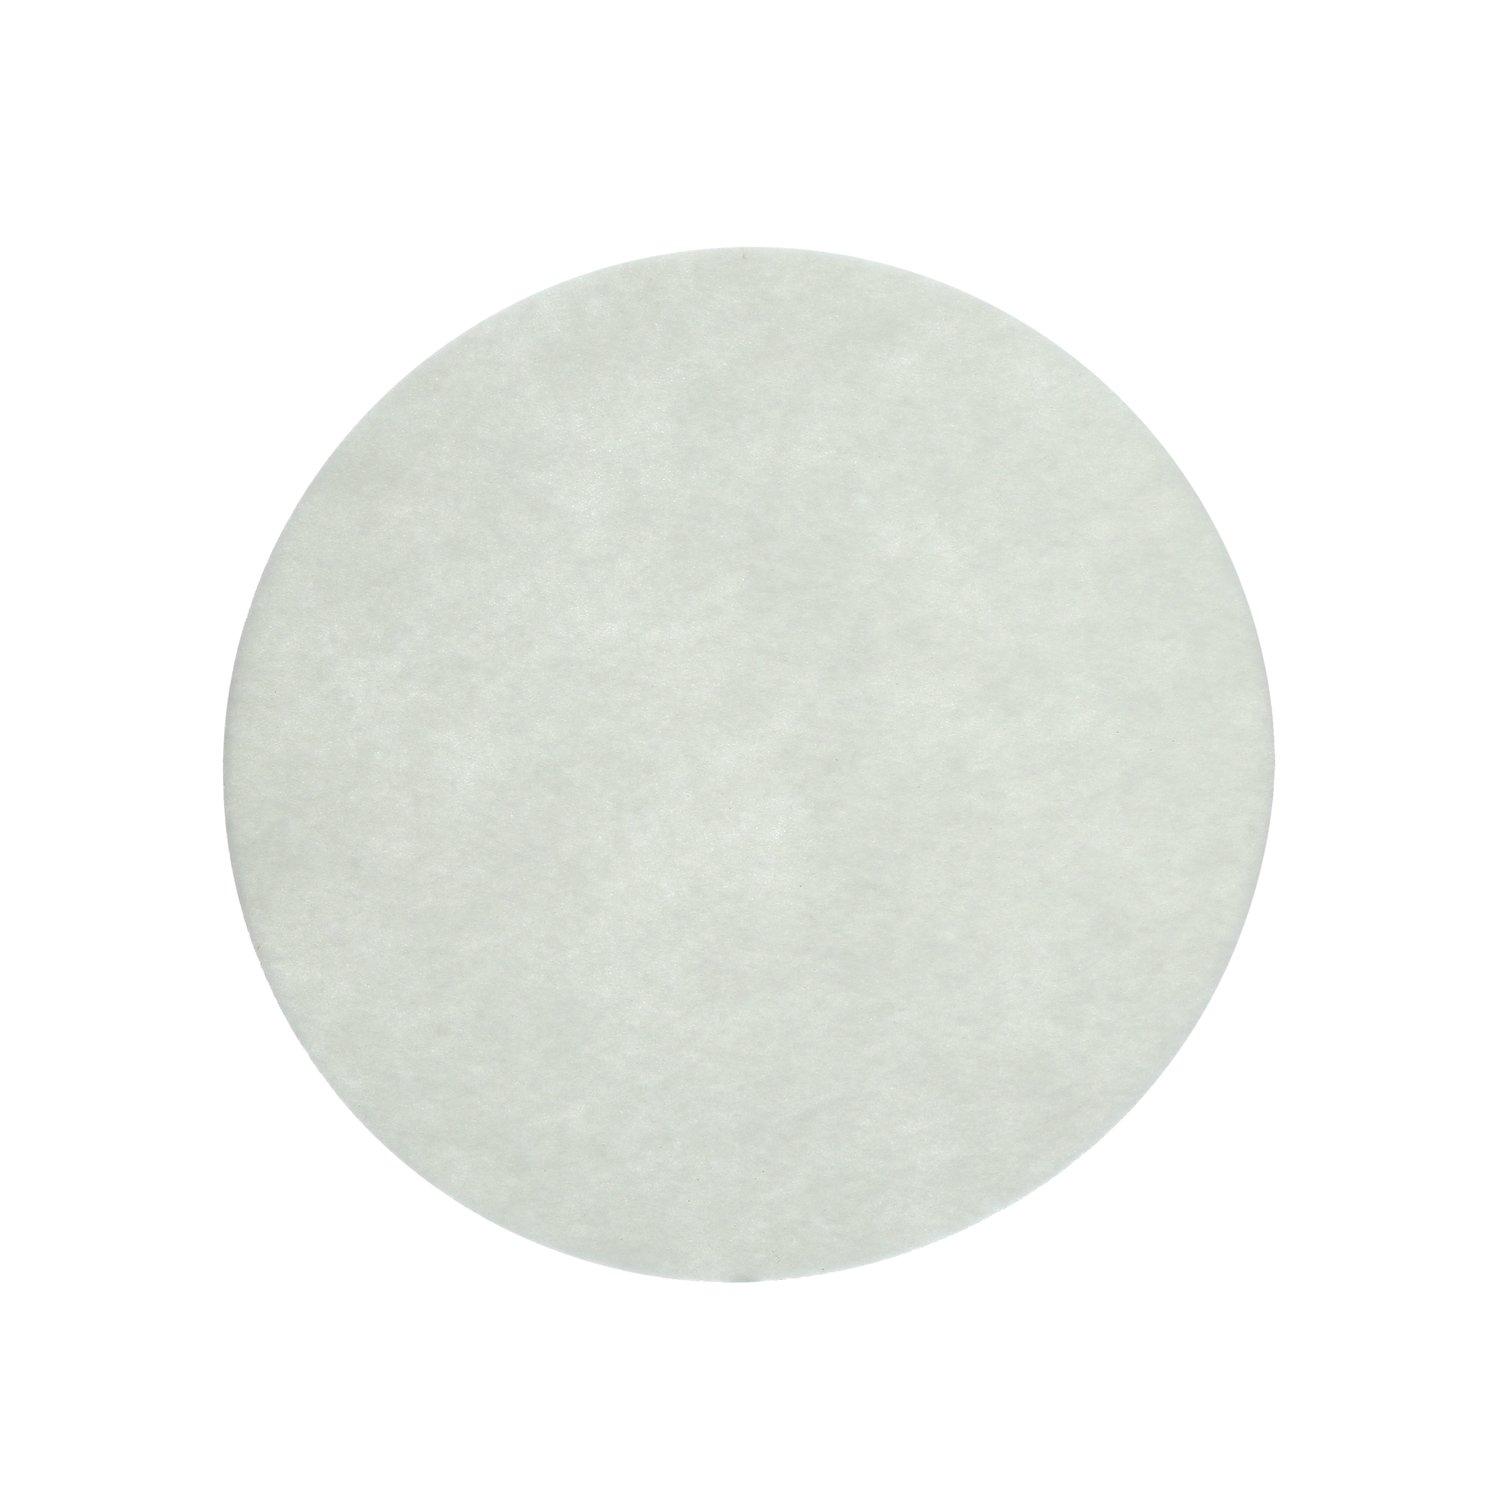 7000126602 - 3M Carpet Bonnet Pad, White, 20 in, 5/Case